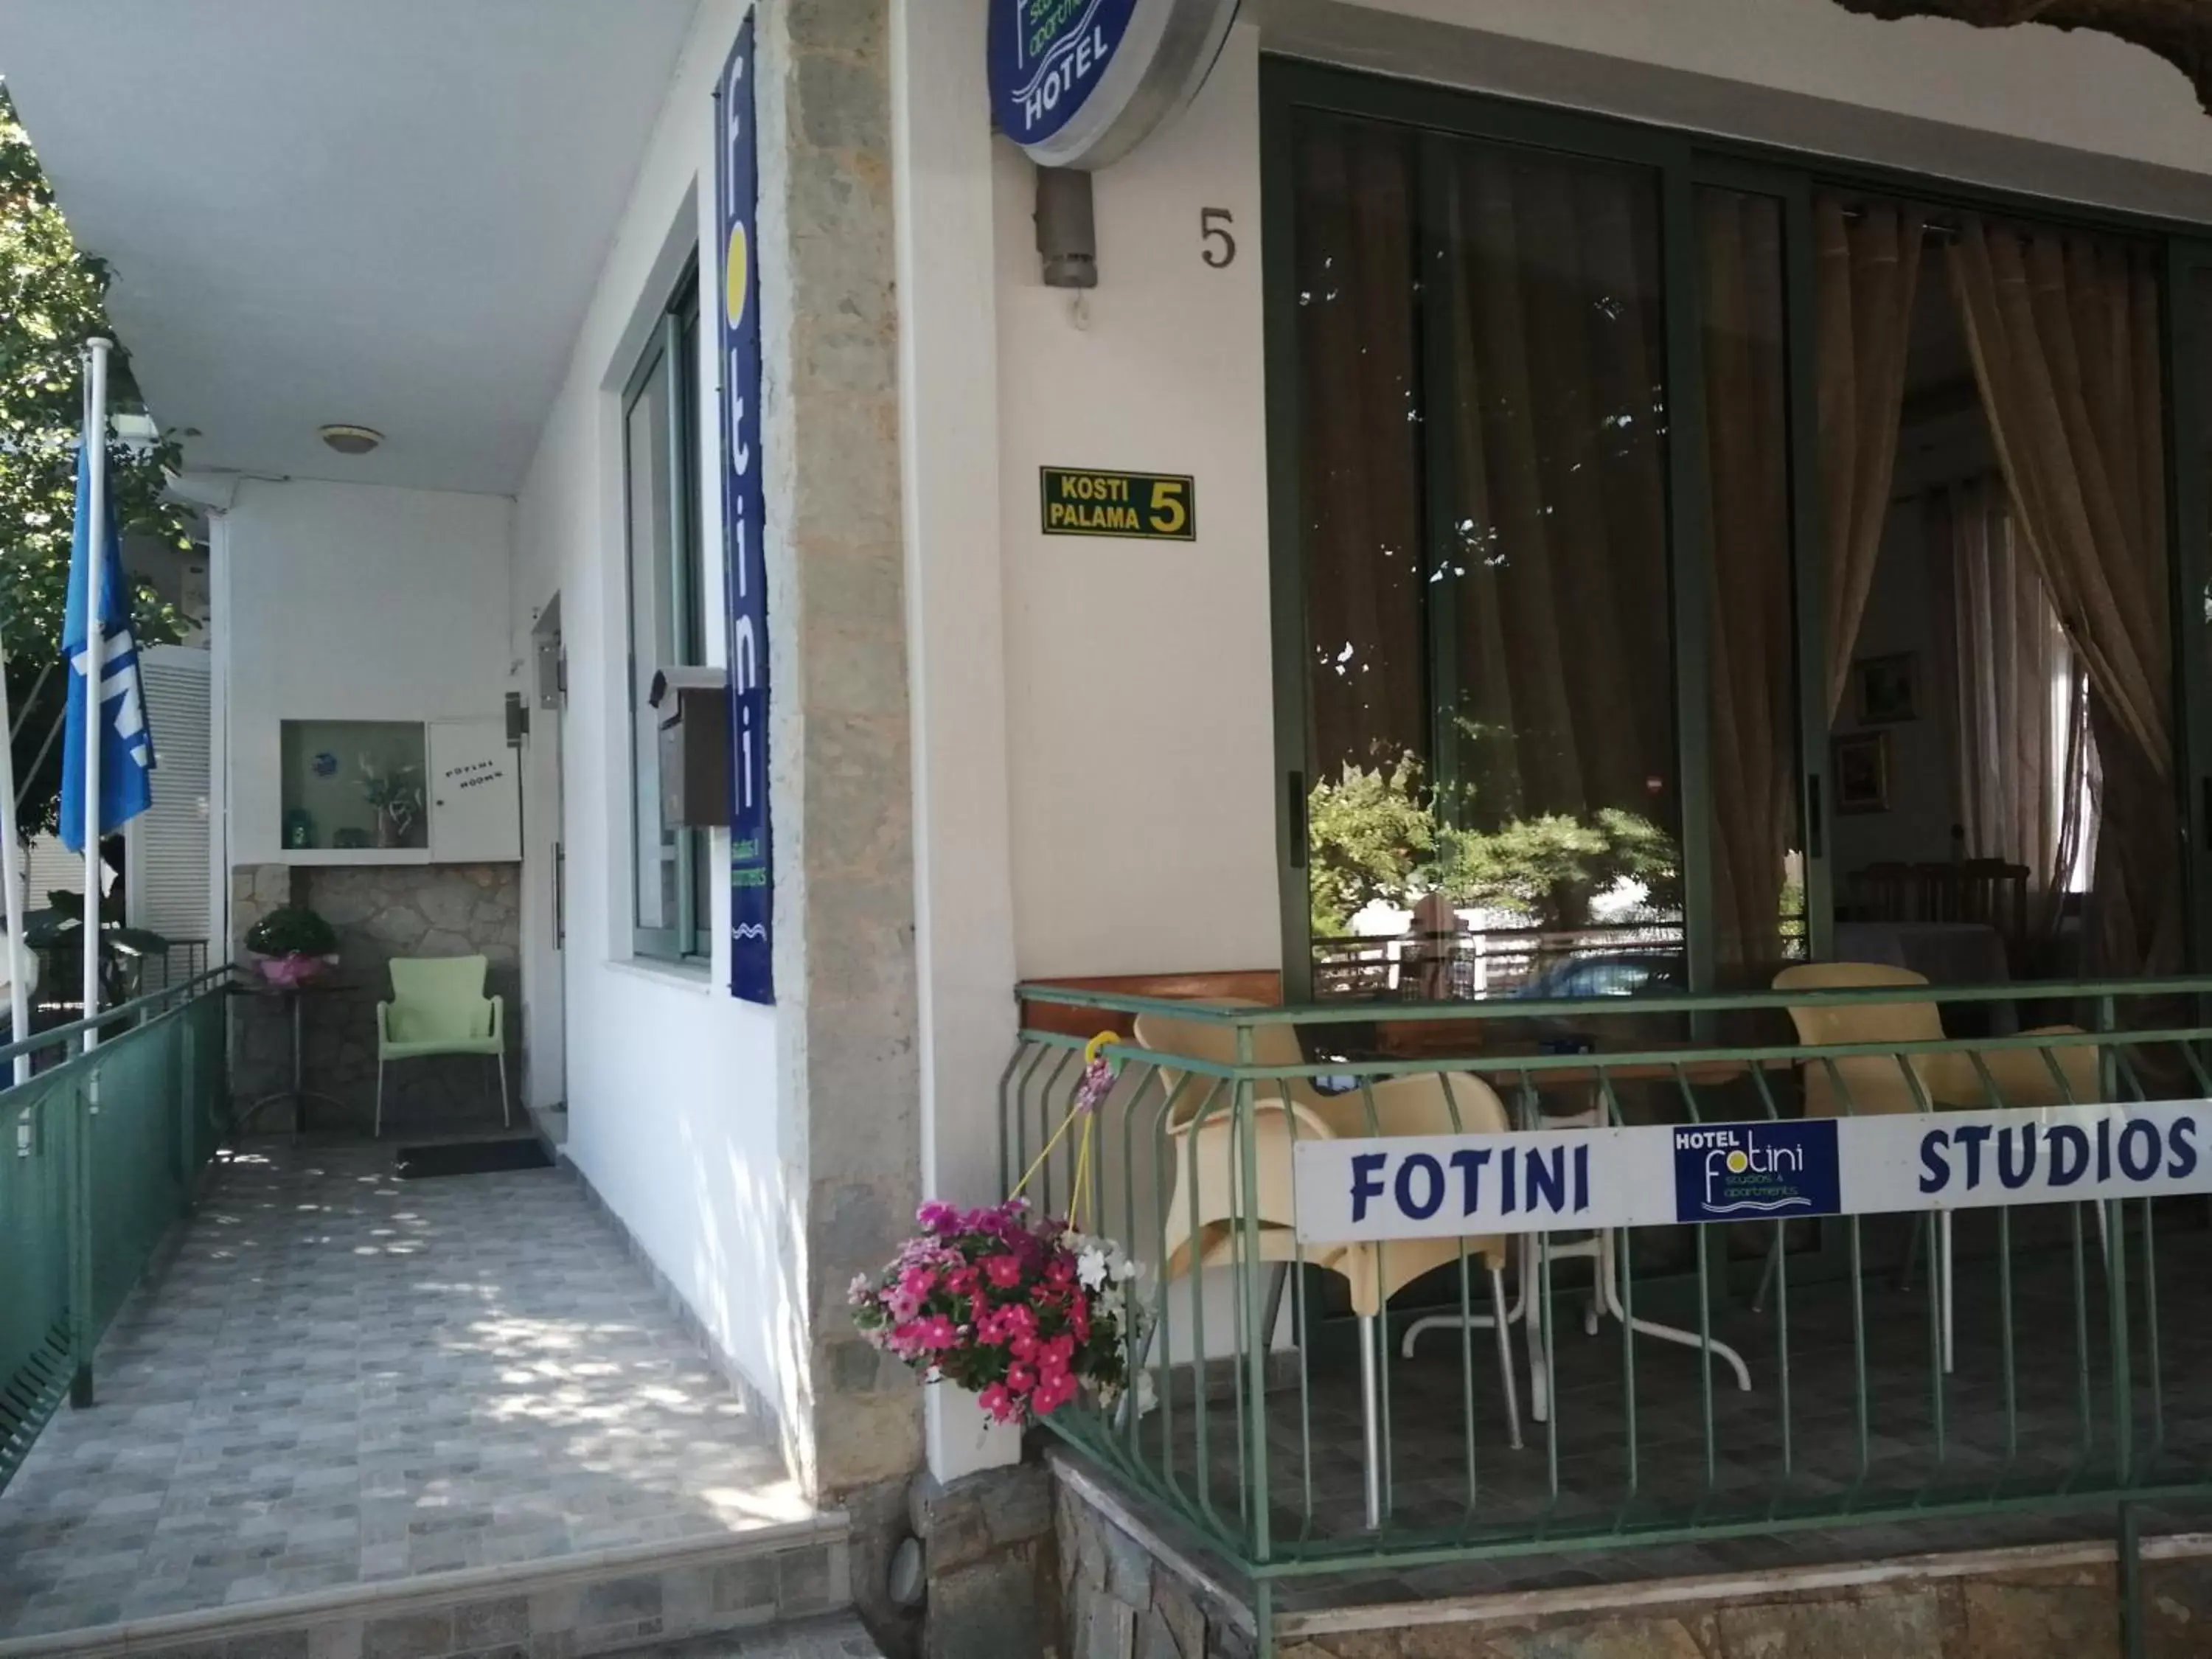 Property building in Hotel Fotini